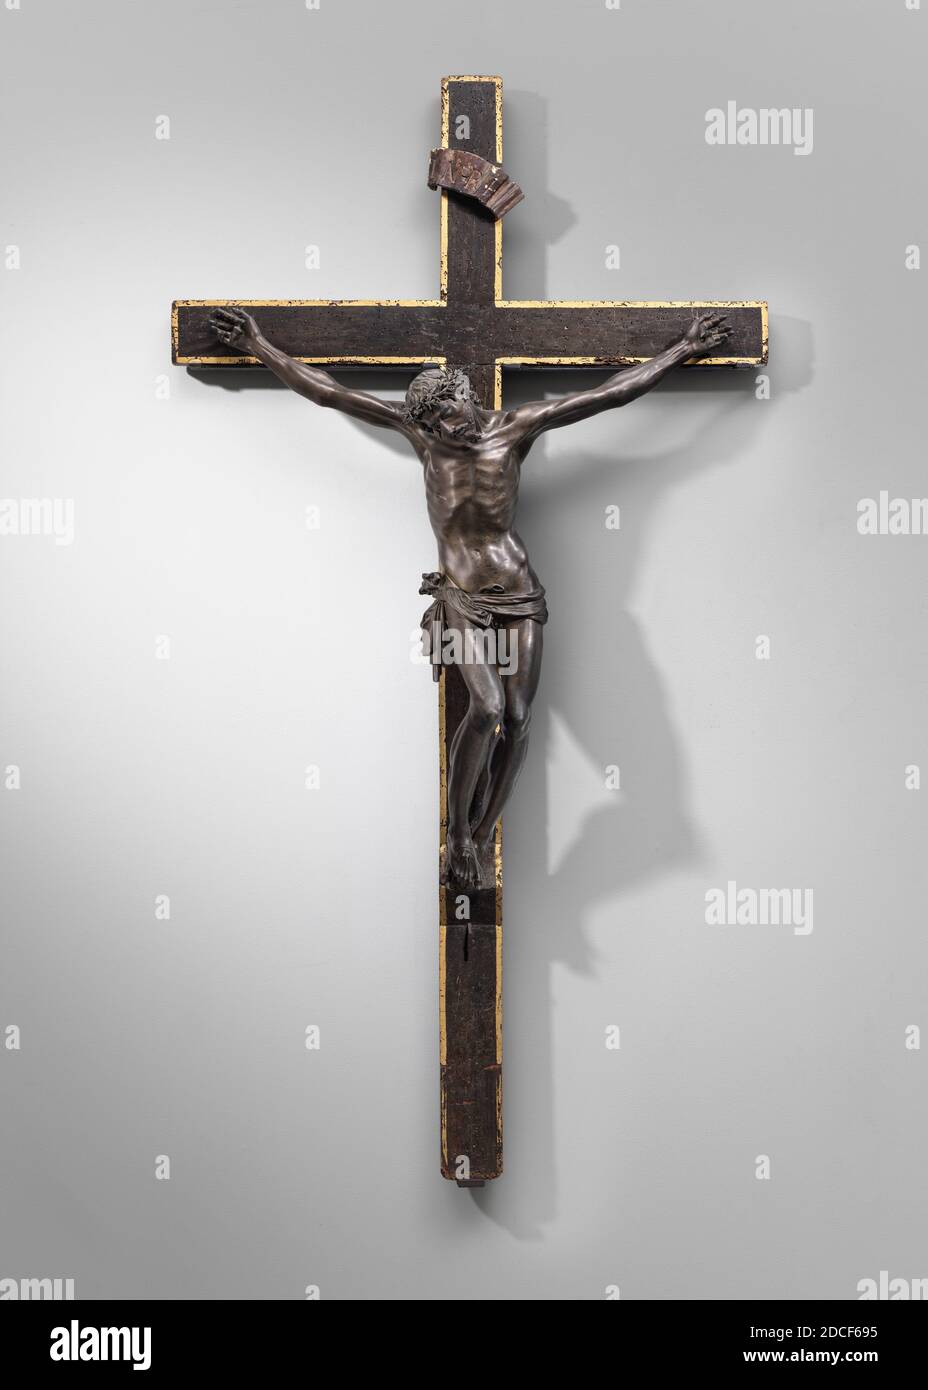 Pietro tacca, (artista), fiorentino, 1577 - 1640, il Crocifisso Pistoia, c.. 1600/1616, bronzo, totale (corpo): 86.9 x 79 x 20.6 cm (34 3/16 x 31 1/8 x 8 1/8 pollici), totale (croce): 167 x 90.1 cm (65 3/4 x 35 1/2 pollici Foto Stock